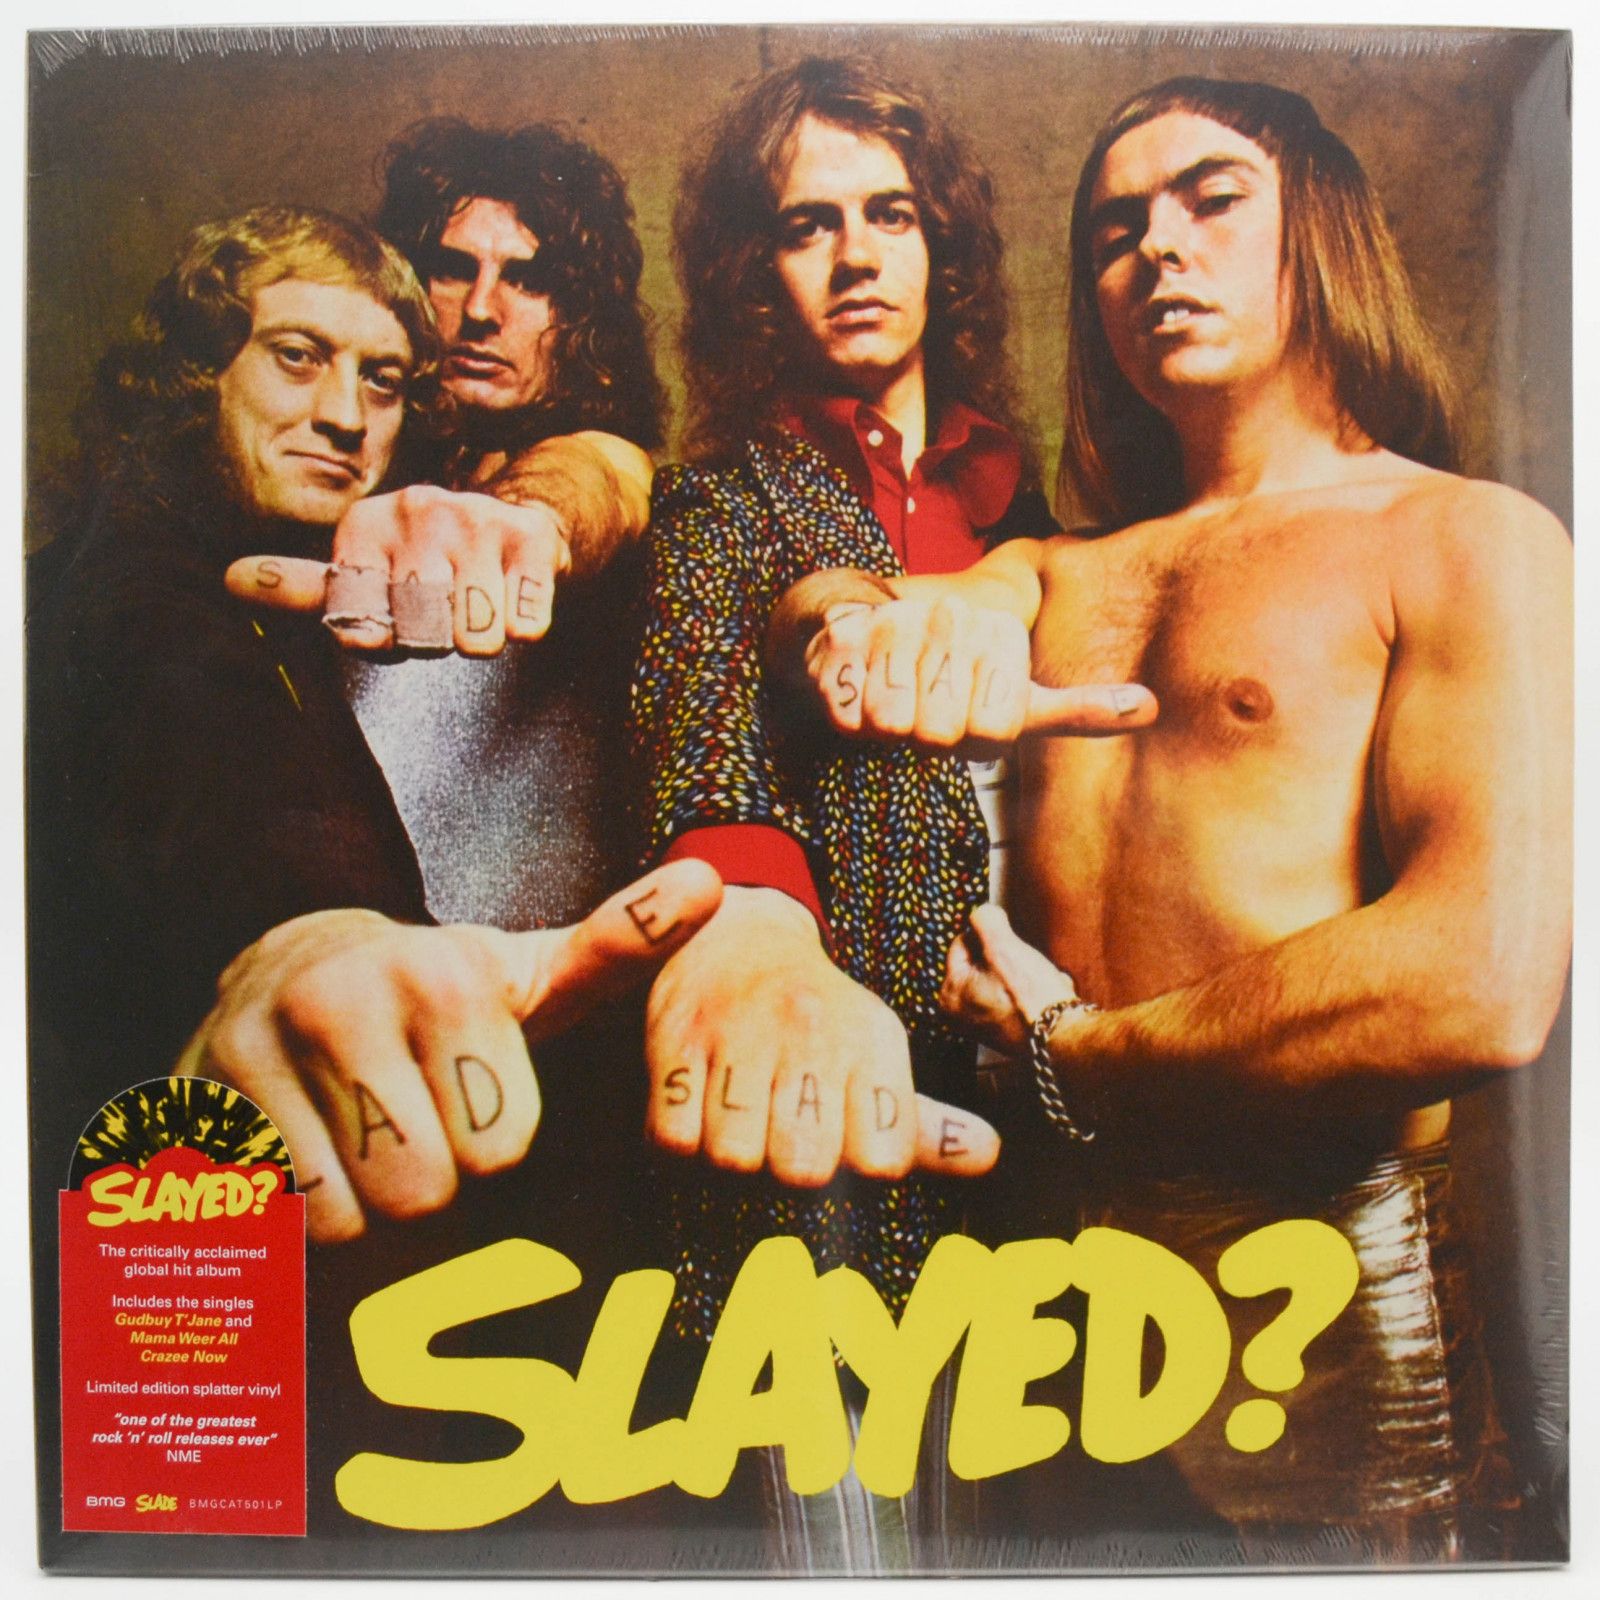 Slade — Slayed?, 1972